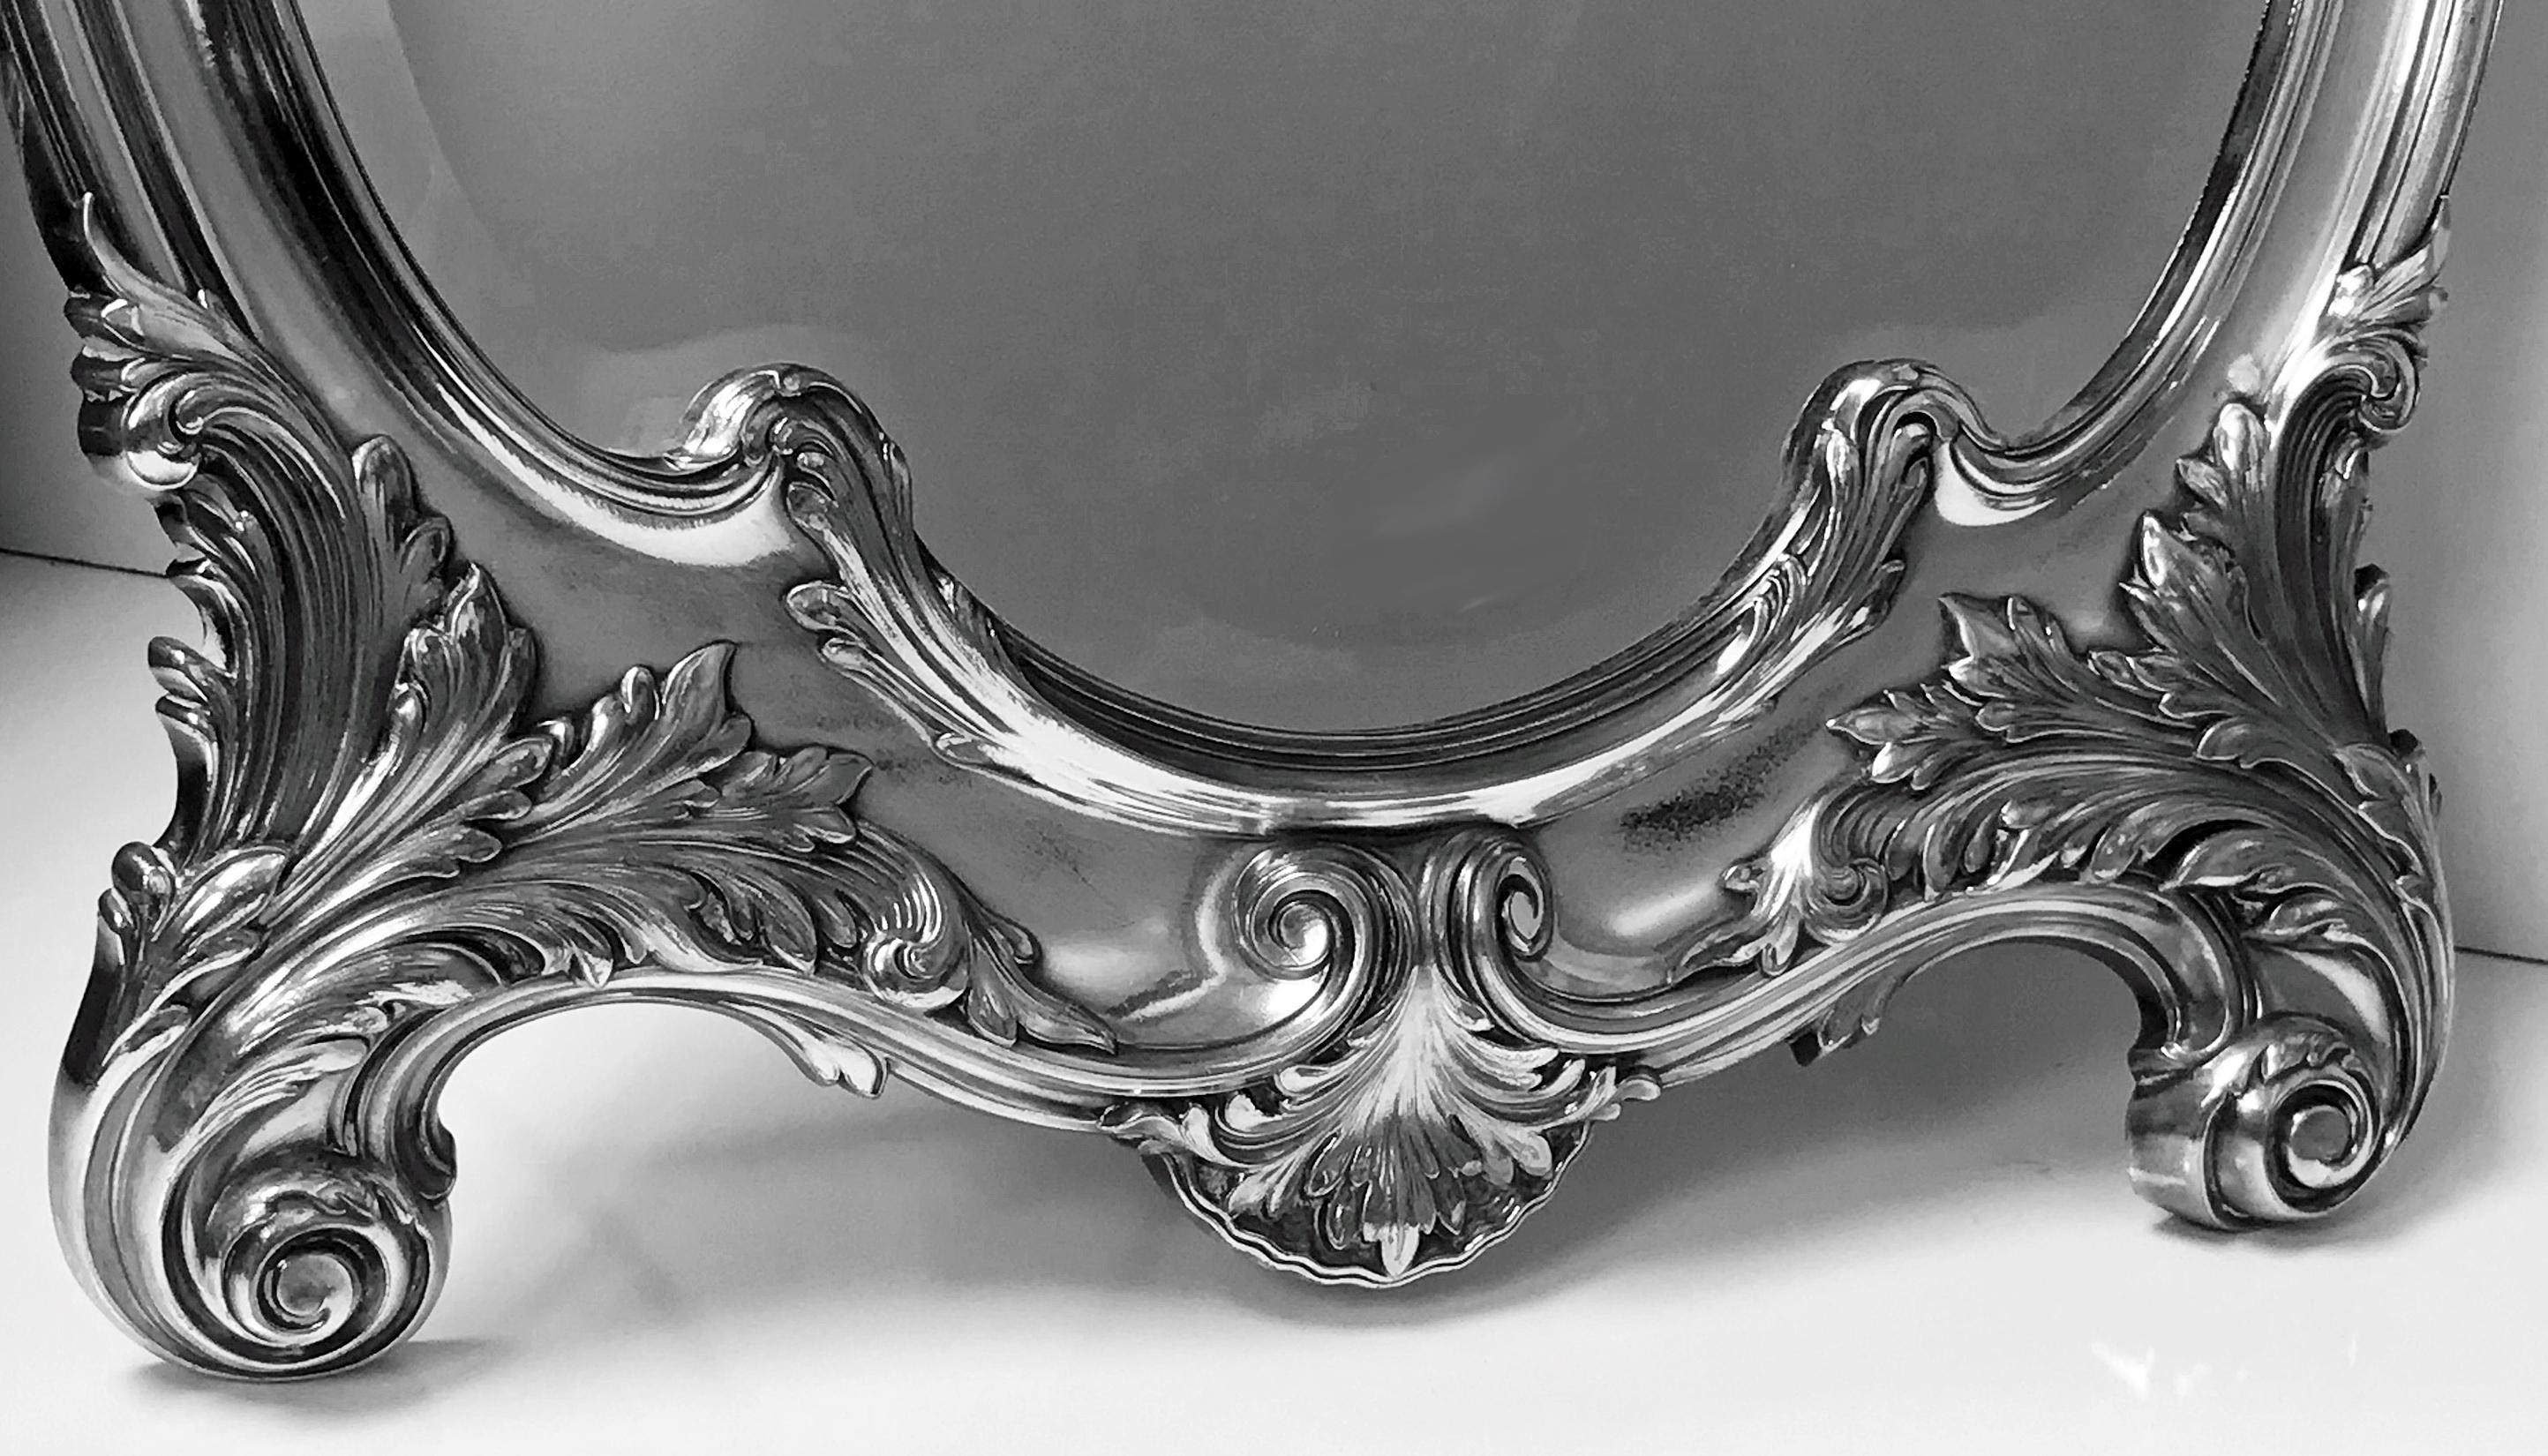 WMF grand miroir Art Nouveau en argent sur étain, Allemagne, vers 1900. Le miroir biseauté d'origine se conformant à un motif de feuillage façonné, le chevalet et le dos d'origine. Marque de ruche WMF G et numéroté 11241. Mesures : Hauteur 23